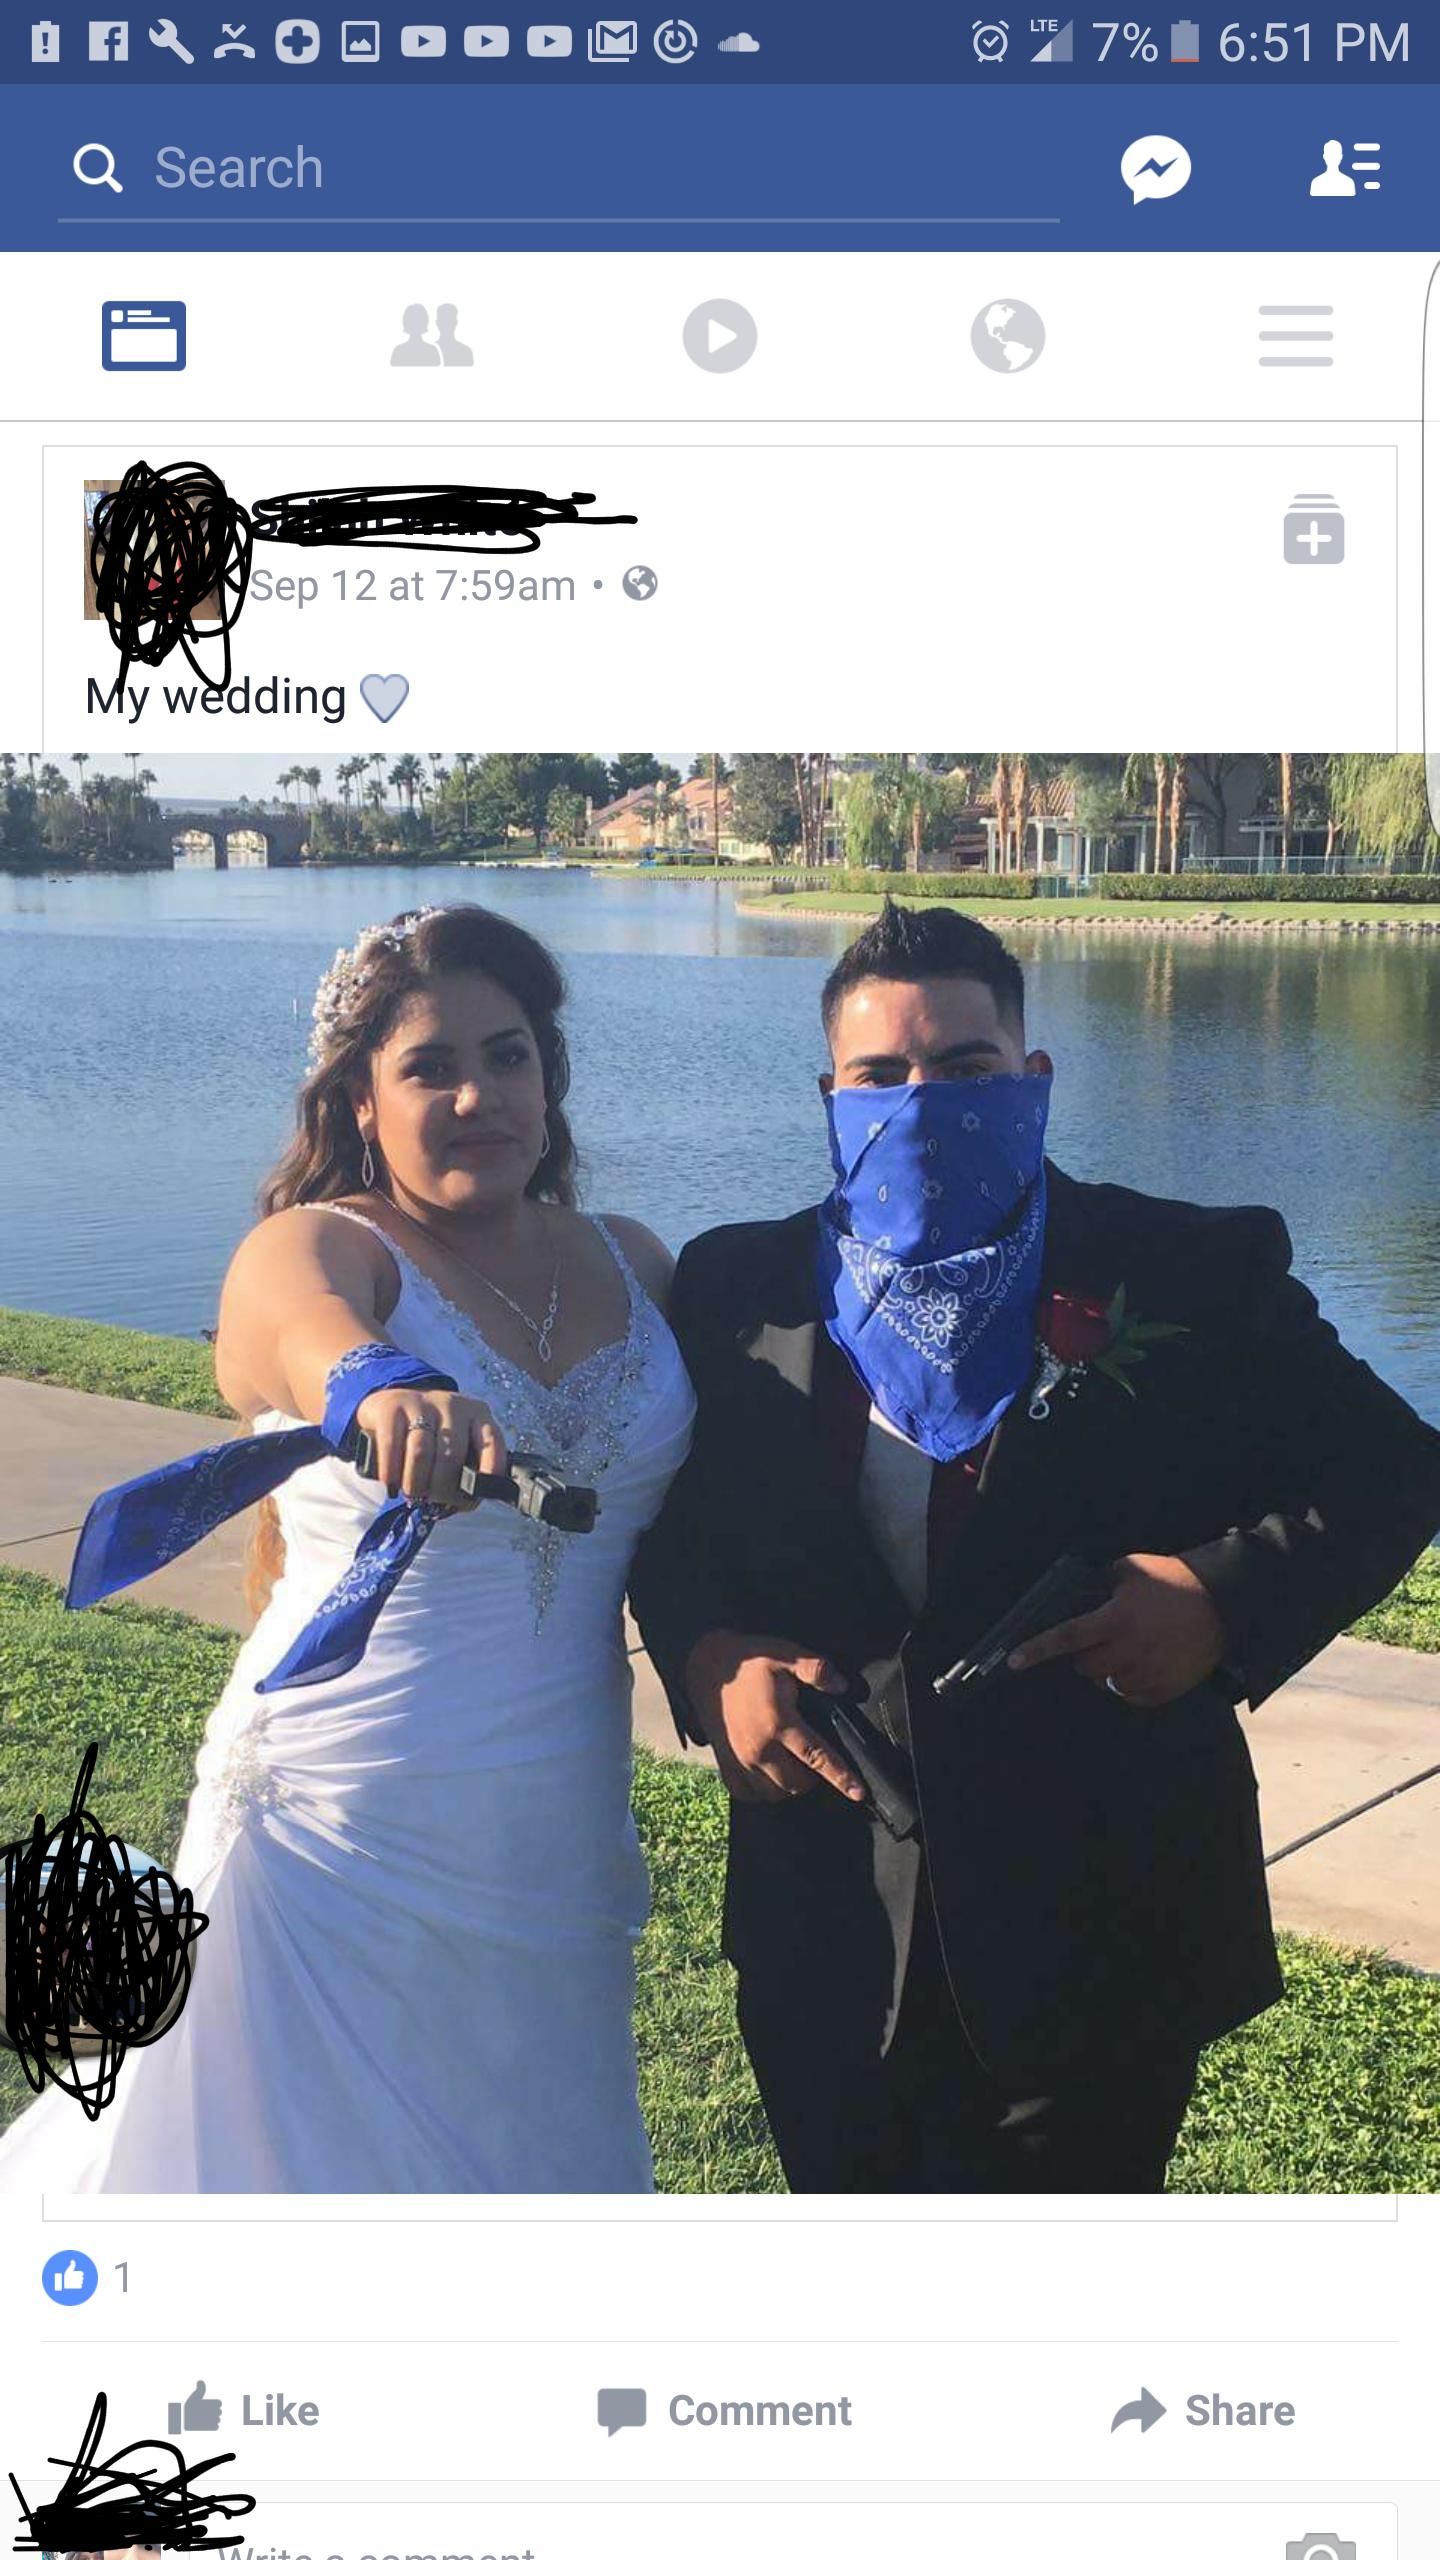 A crip wedding